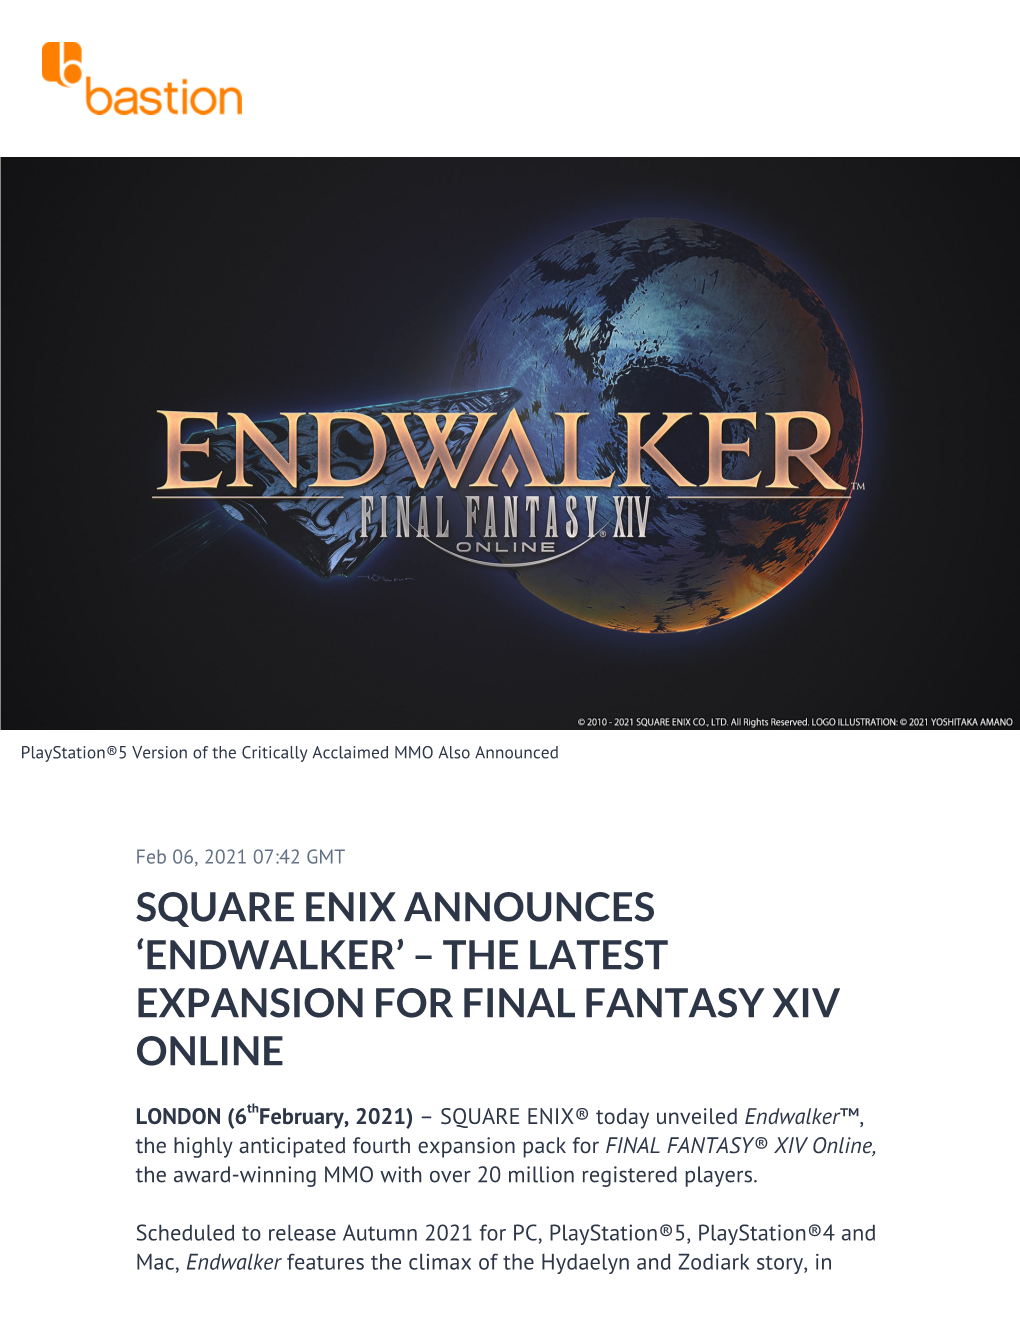 Square Enix Announces 'Endwalker' – the Latest